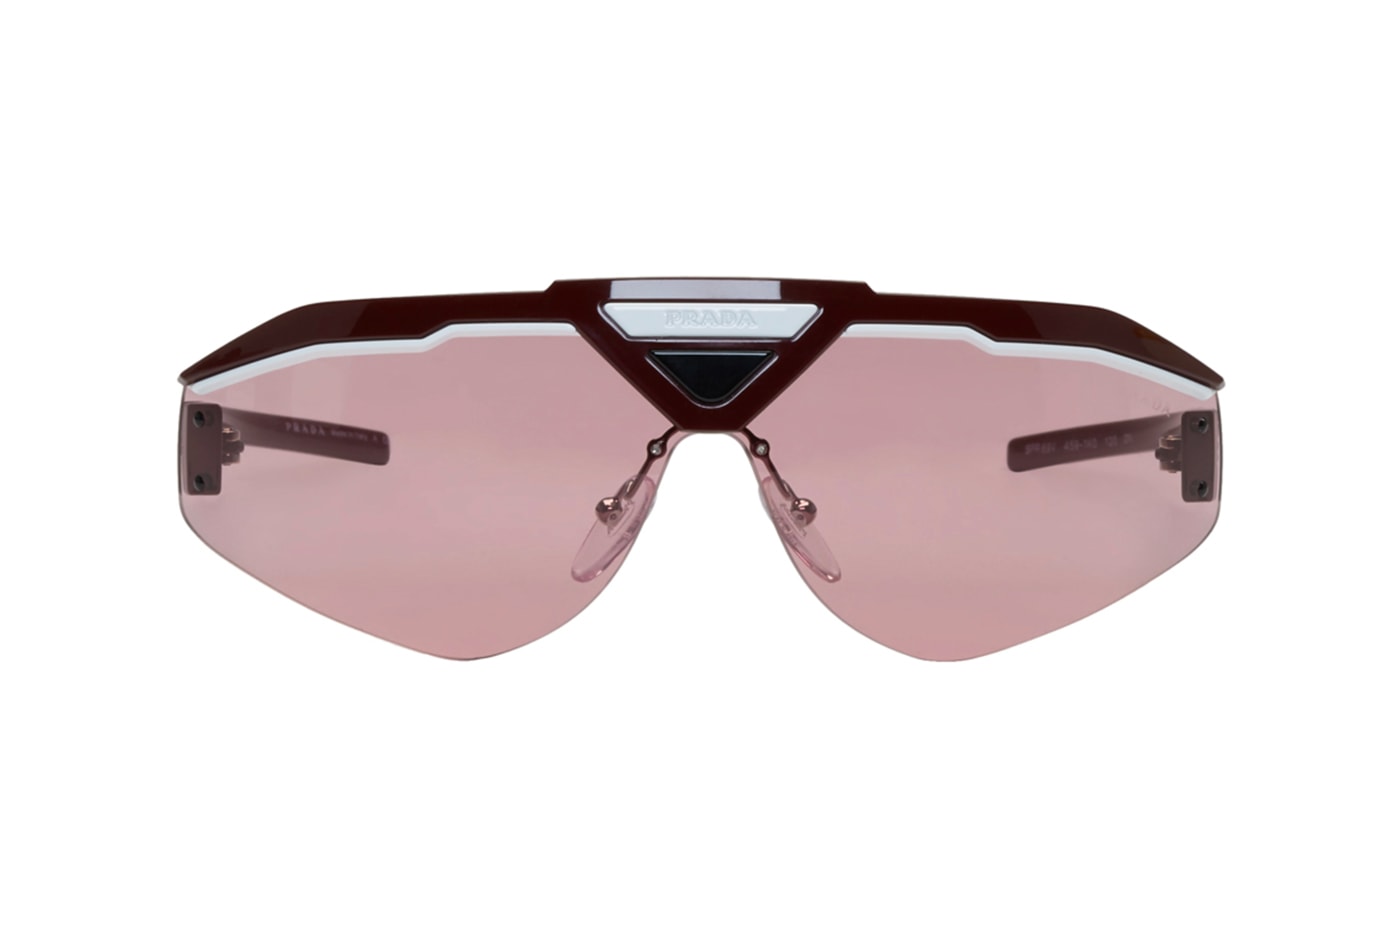  프라다의 2019 가을, 겨울 시즌 미러 렌즈 및 3종의 선글라스 판매처 및 가격 